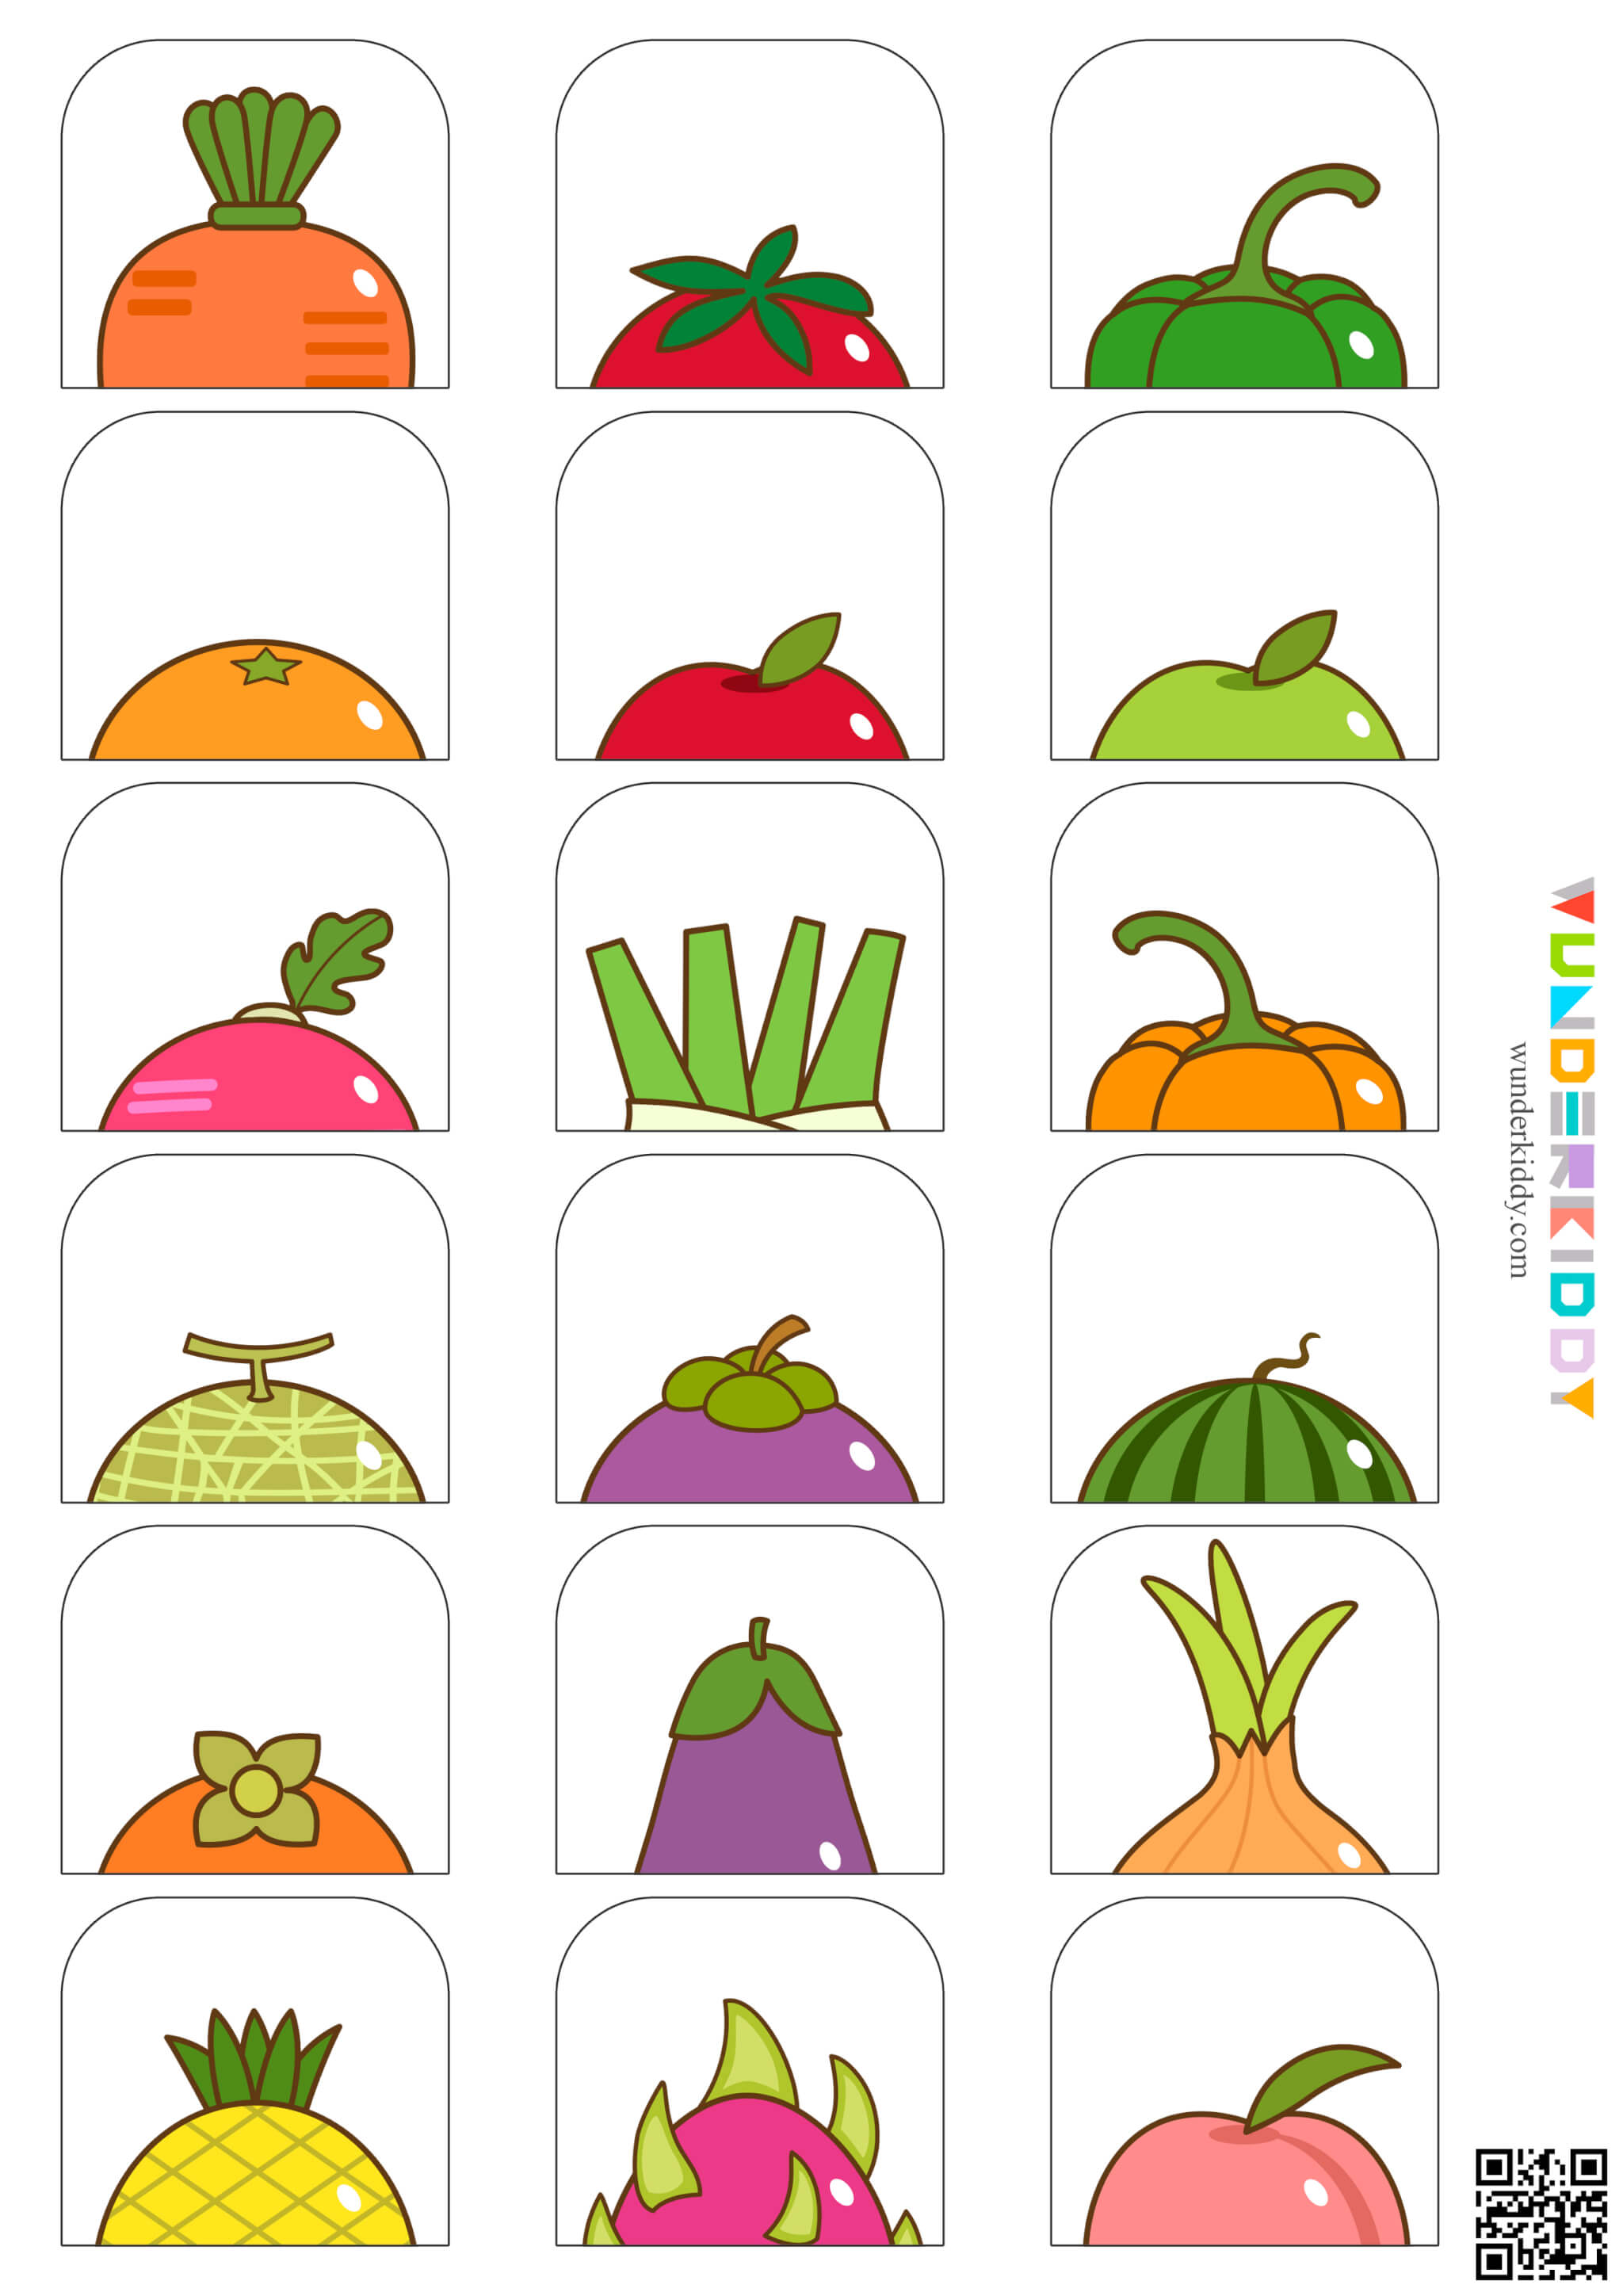 Fruit Hats Matching Game - Image 4